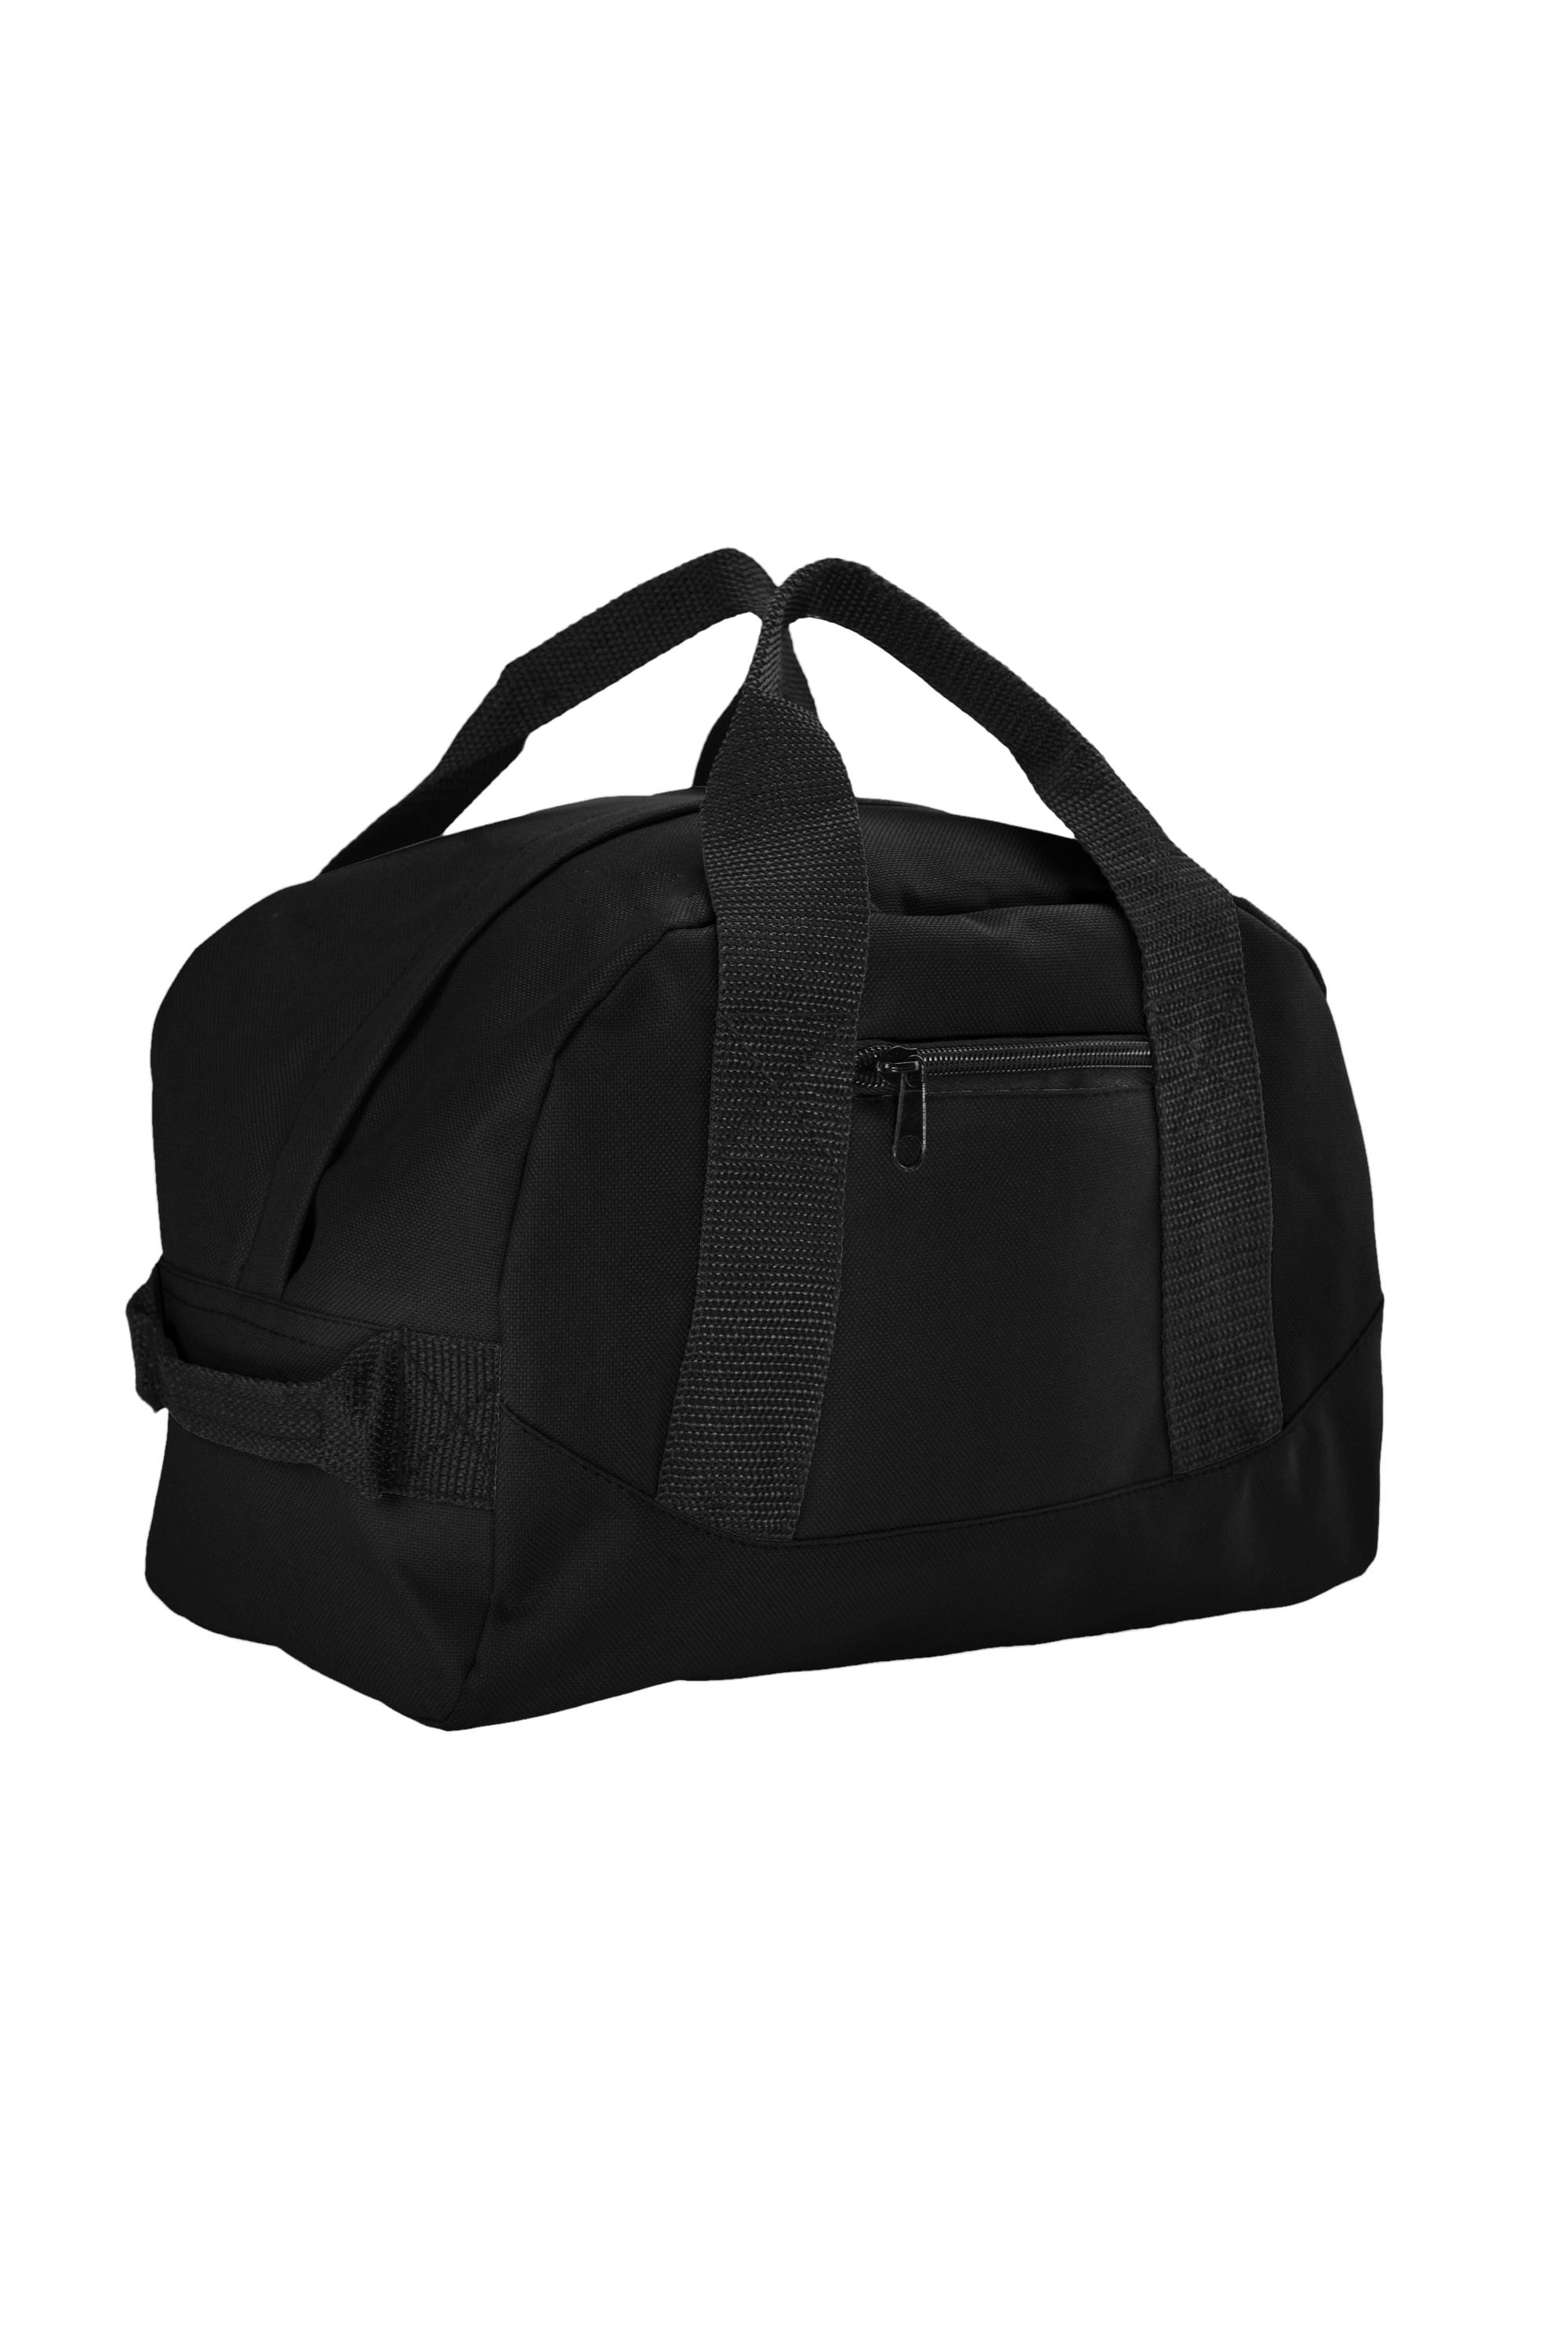 Buy An Elegant Training Bag Designed For Both Men And Women Online |  Decathlon